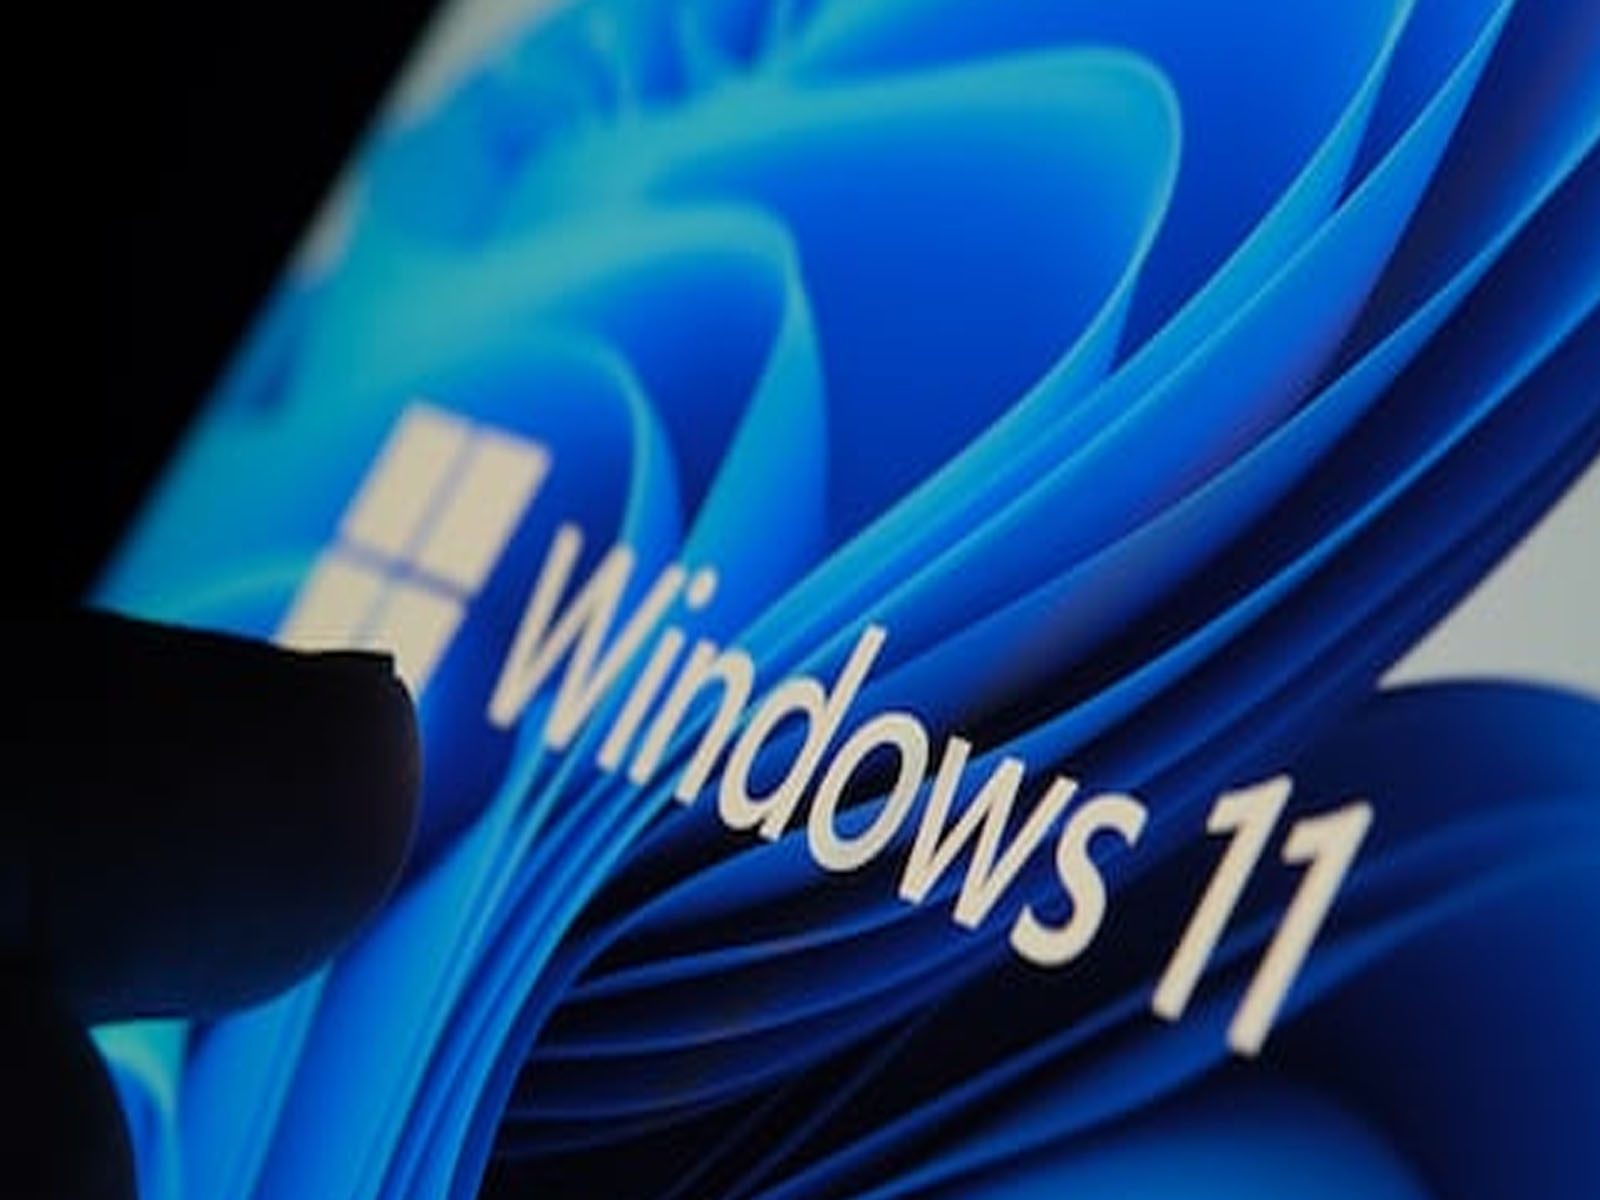 Microsoft Windows 11 ਦੀਆਂ ਅਪਡੇਟਸ ਹੋਈਆਂ ਜਾਰੀ, ਜਾਣੋ ਨਵੇਂ ਫੀਚਰ ਅਤੇ ਅਪਡੇਟਸ ਇੰਸਟਾਲ ਕਰਨ ਦੇ ਸਟੈੱਪ